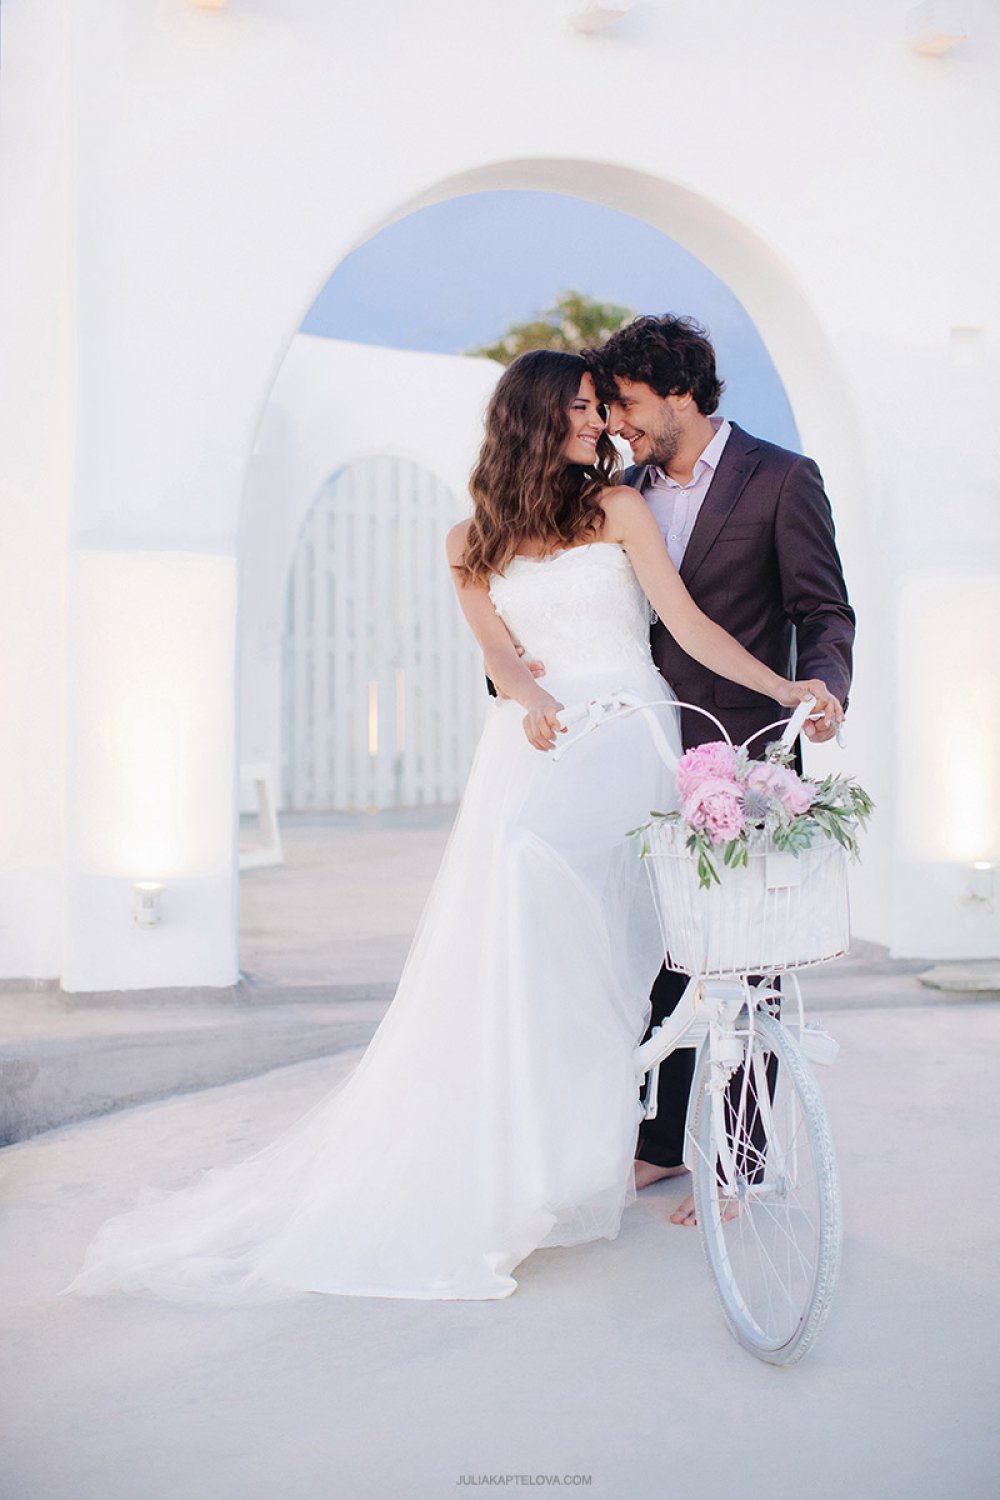 Велосипед на свадебной фотосессии